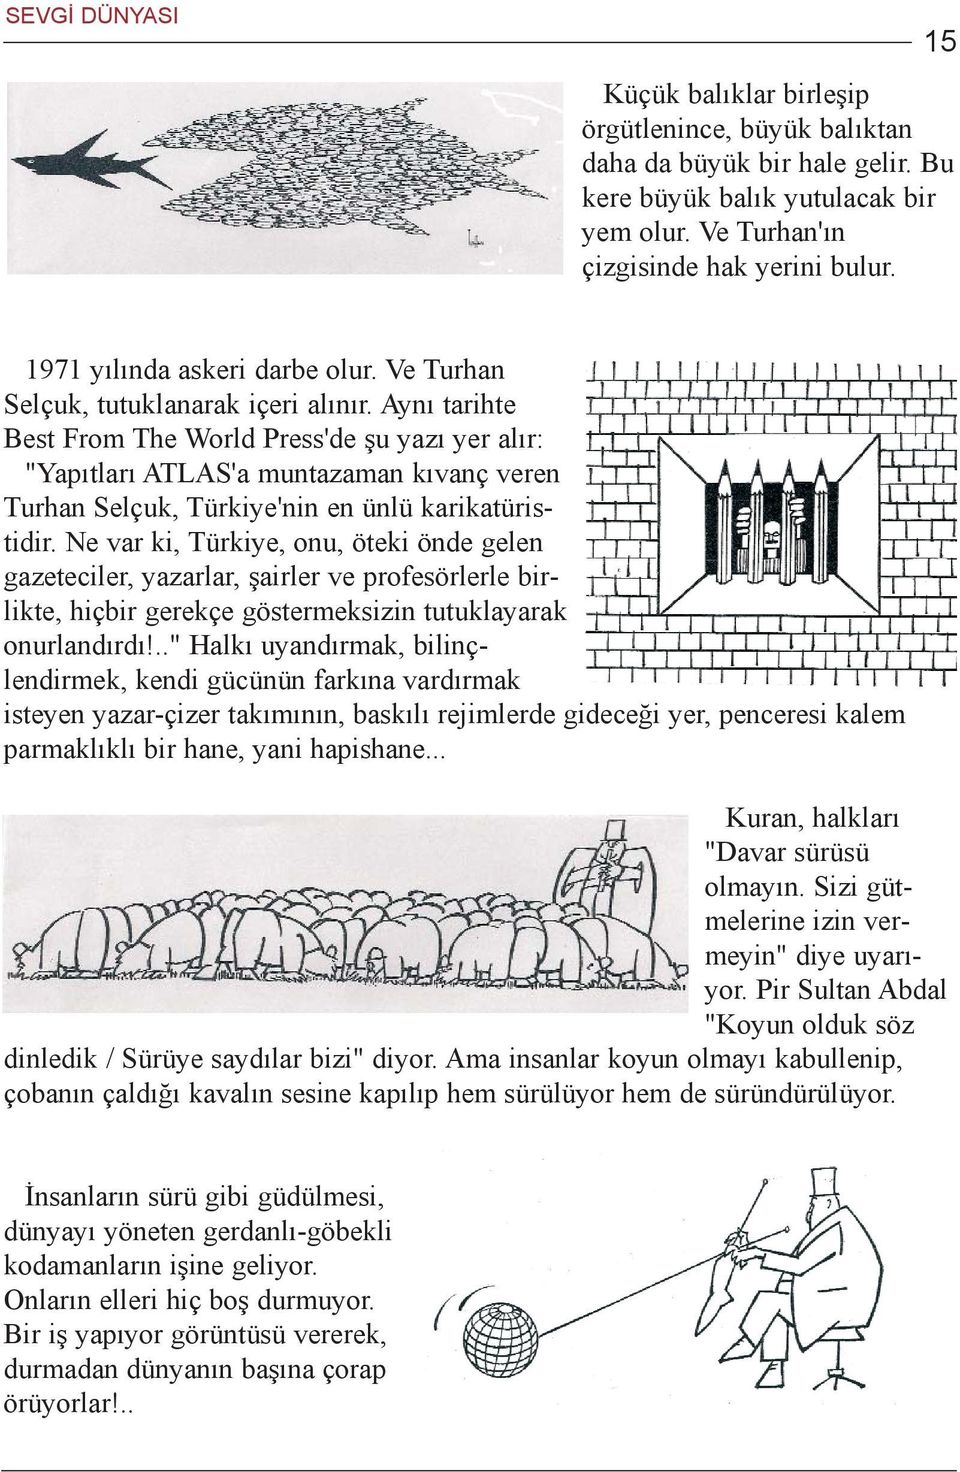 Ayný tarihte Best From The World Press'de þu yazý yer alýr: "Yapýtlarý ATLAS'a muntazaman kývanç veren Turhan Selçuk, Türkiye'nin en ünlü karikatüristidir.